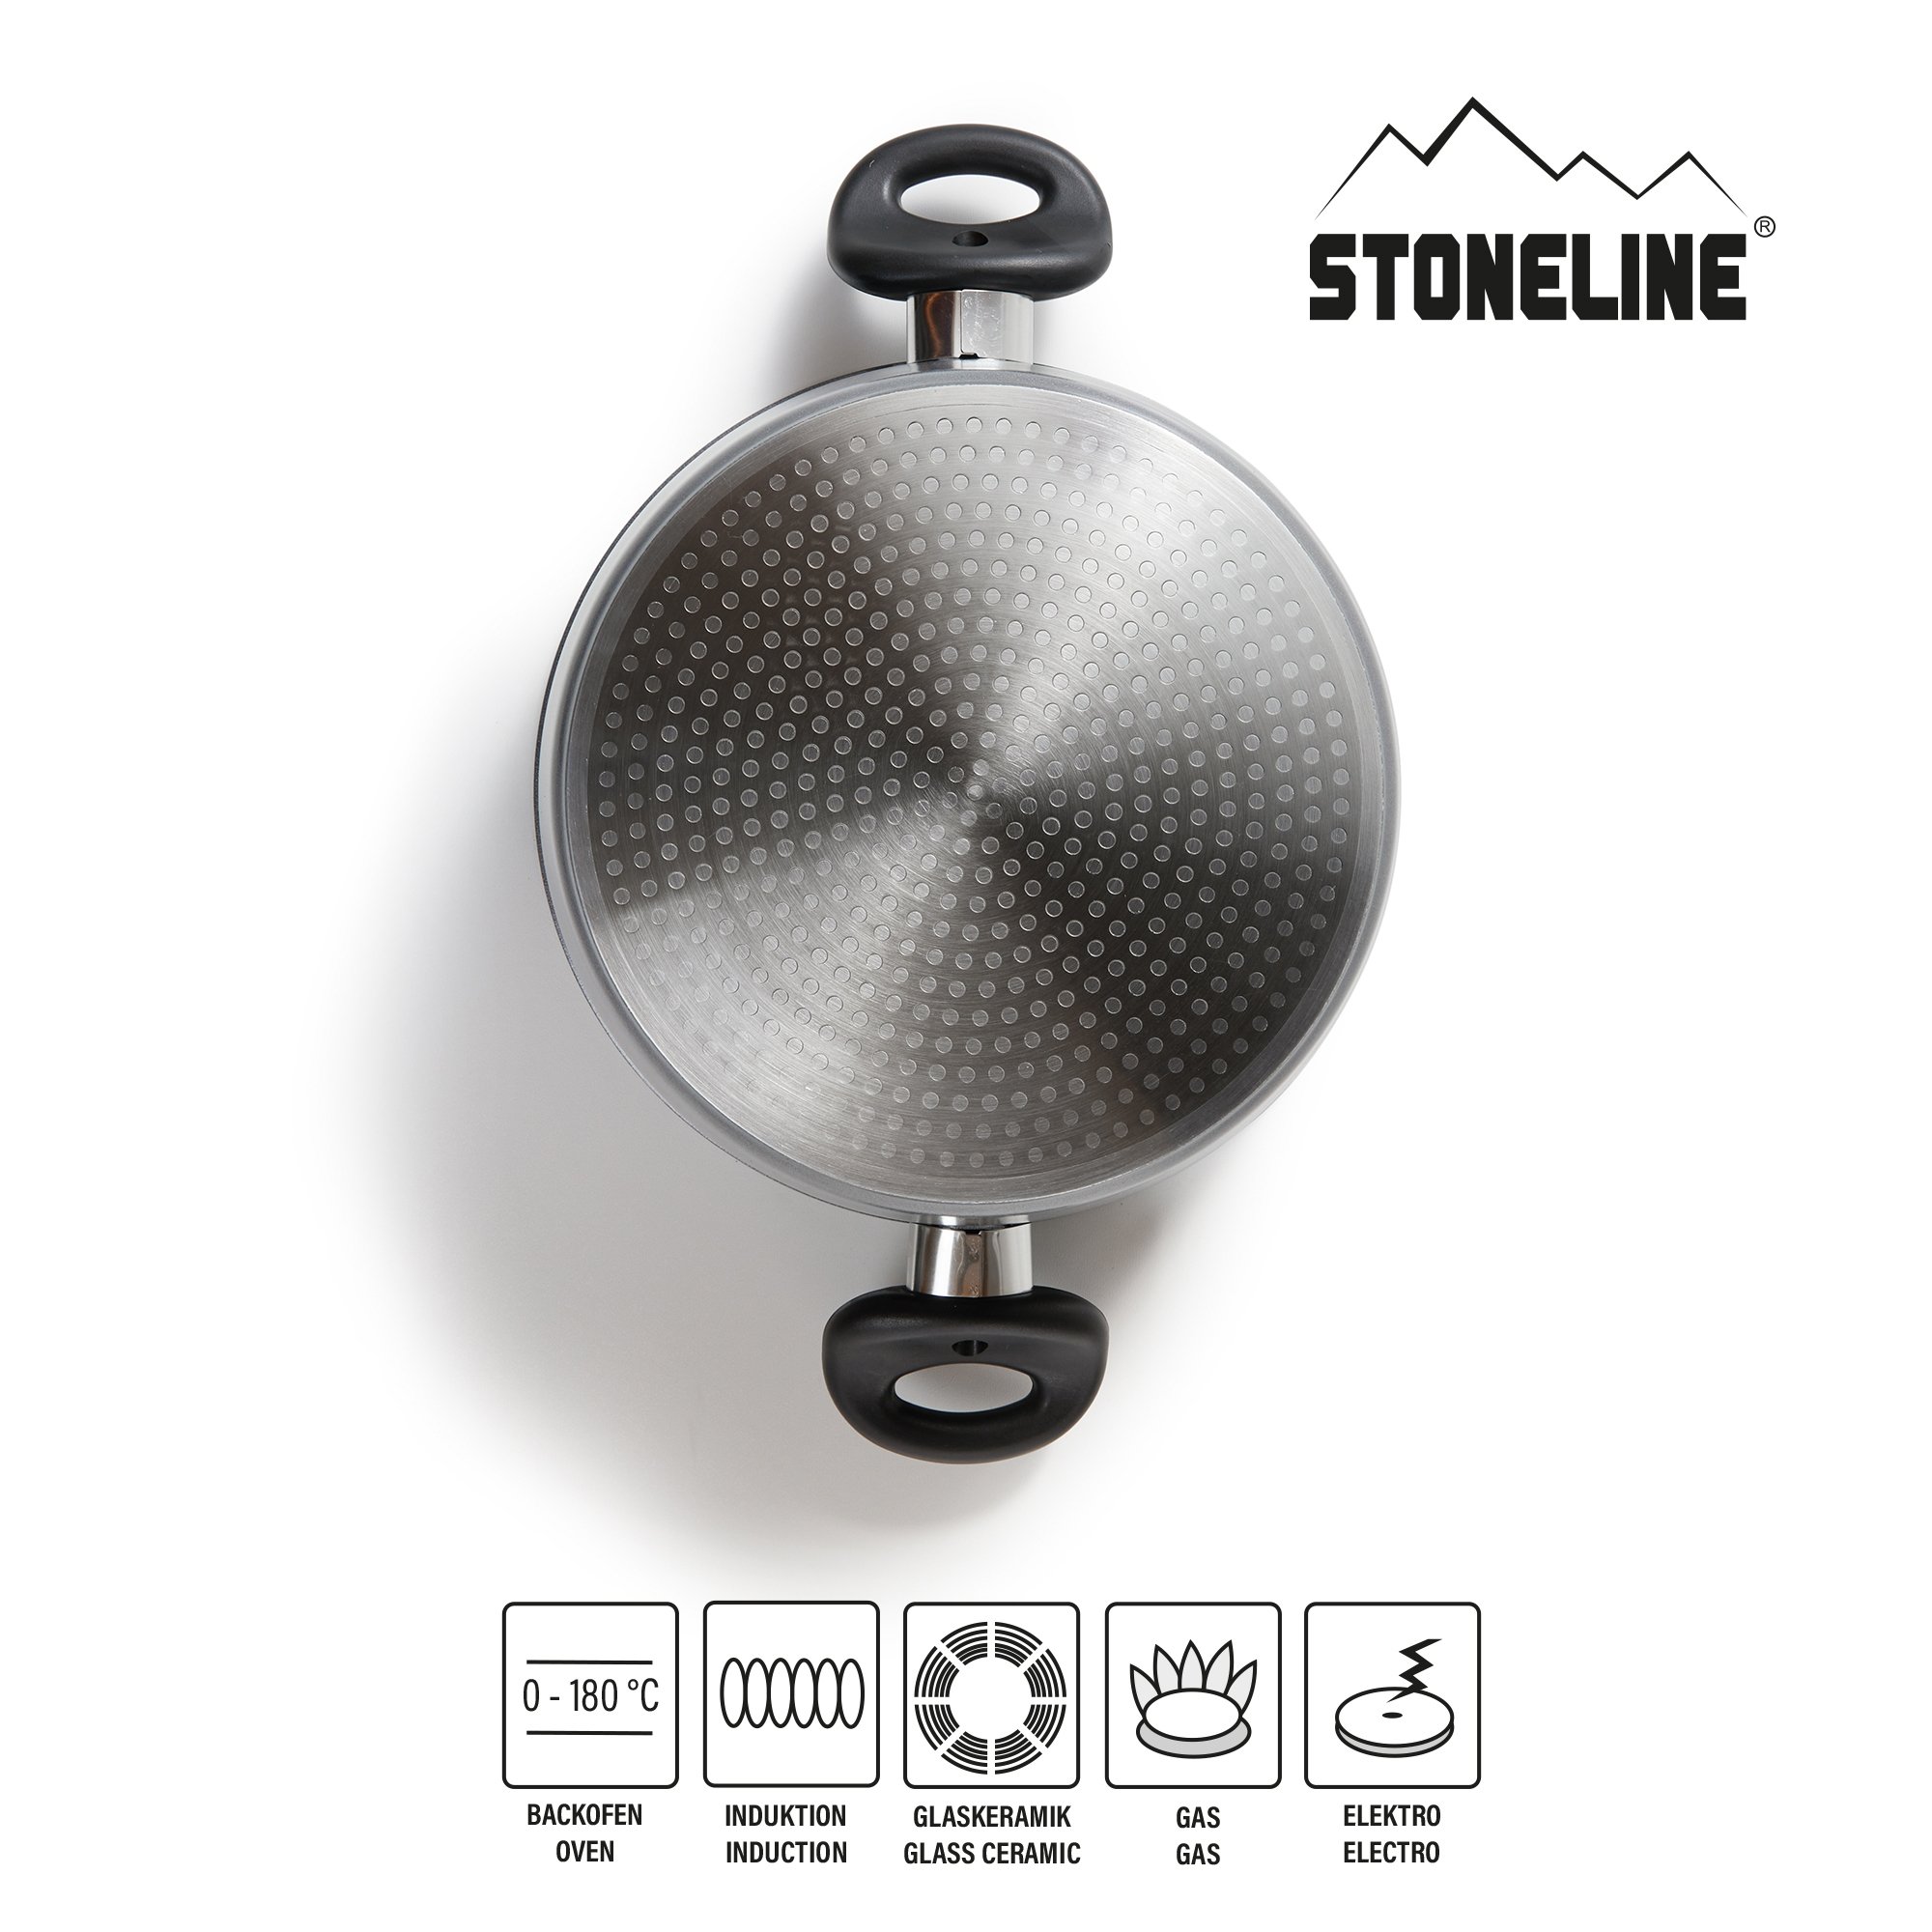 STONELINE® sartén 24 cm, con tapa de cristal, sartén antiadherente, apta para inducción y horno